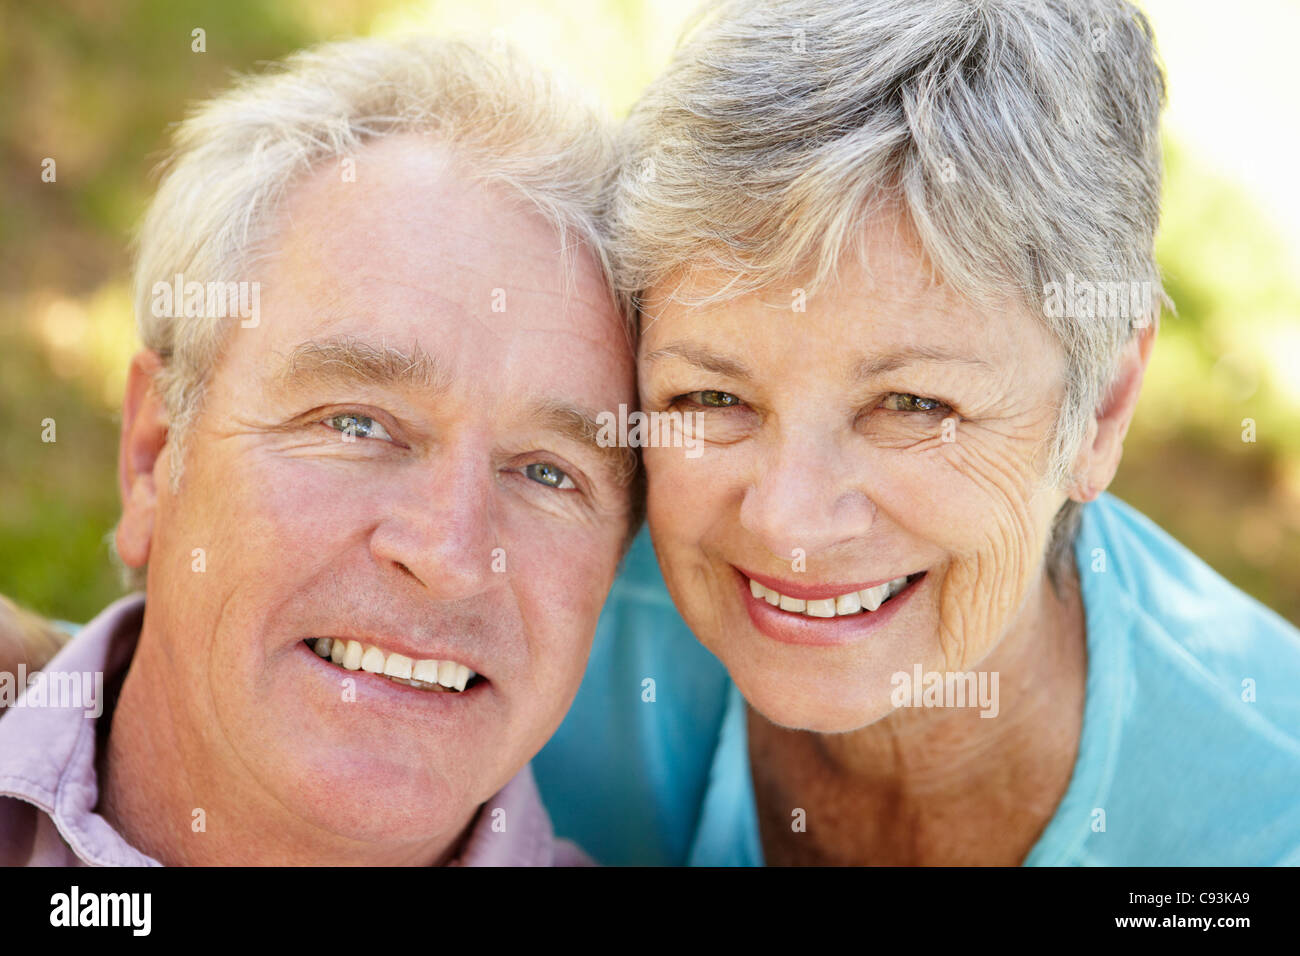 Senior couple outdoors Stock Photo